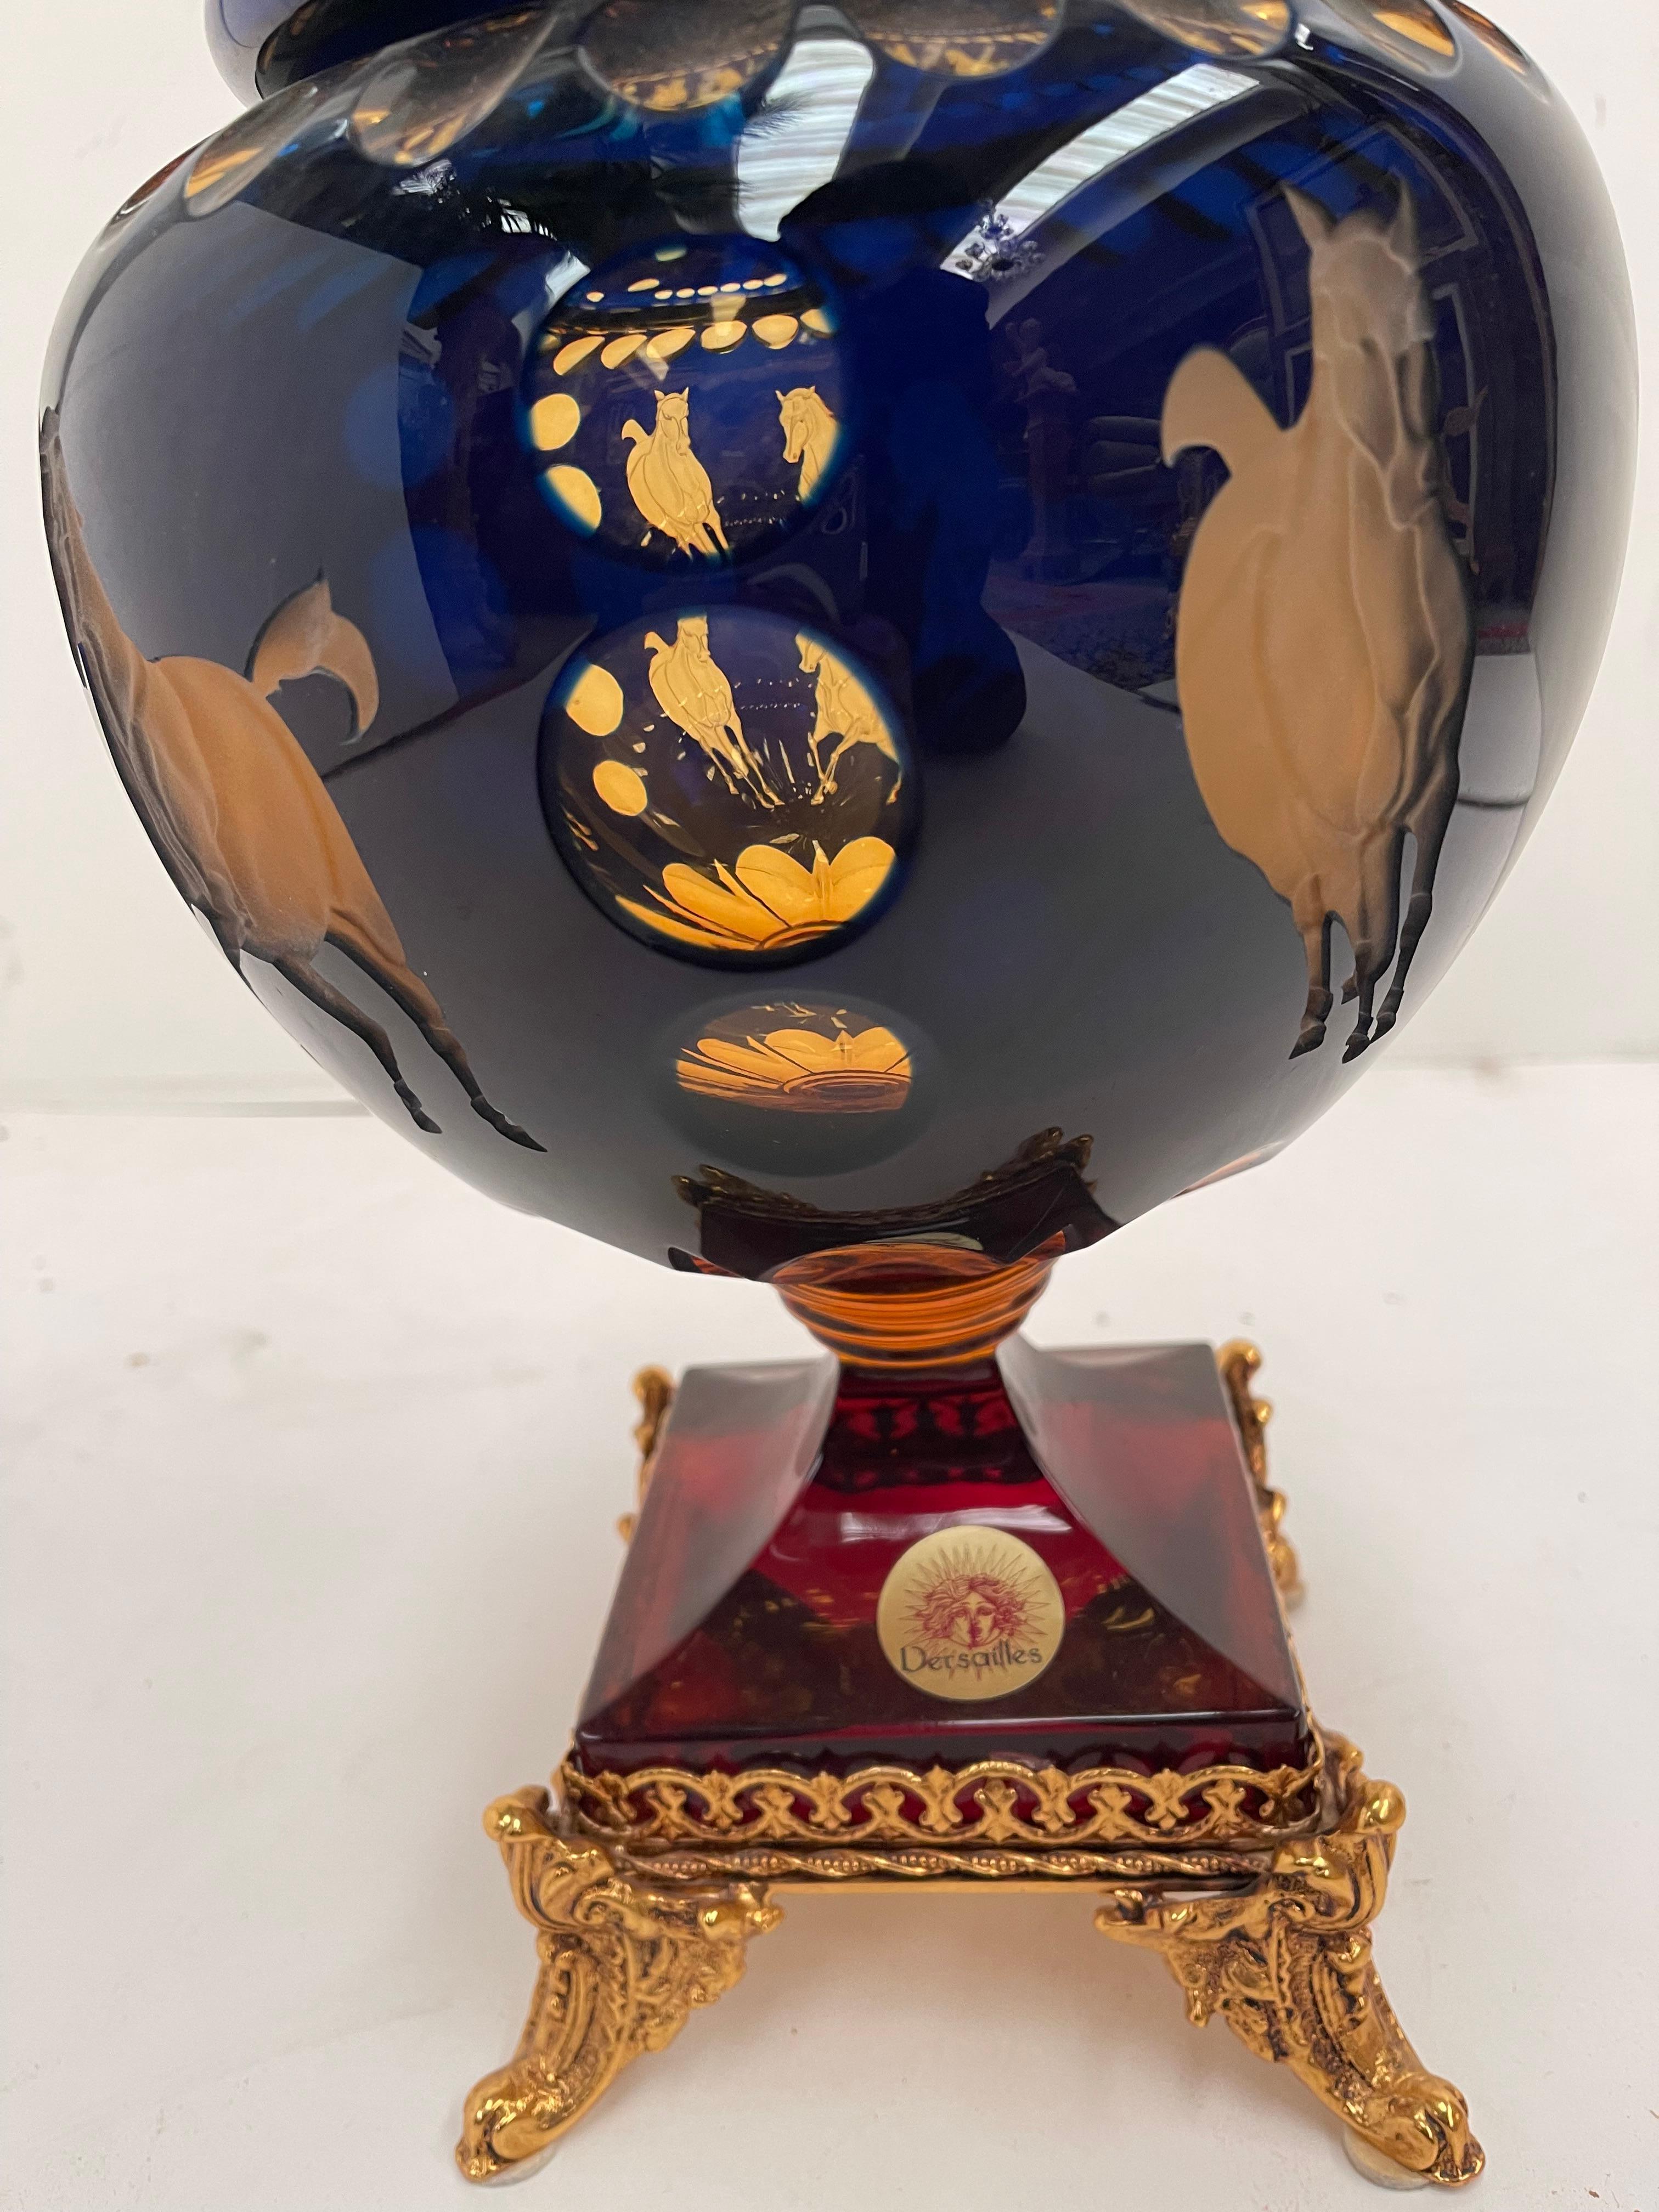 Art Glass Precioso Cristallo molato a mano con decorazione in bronzo dorato For Sale